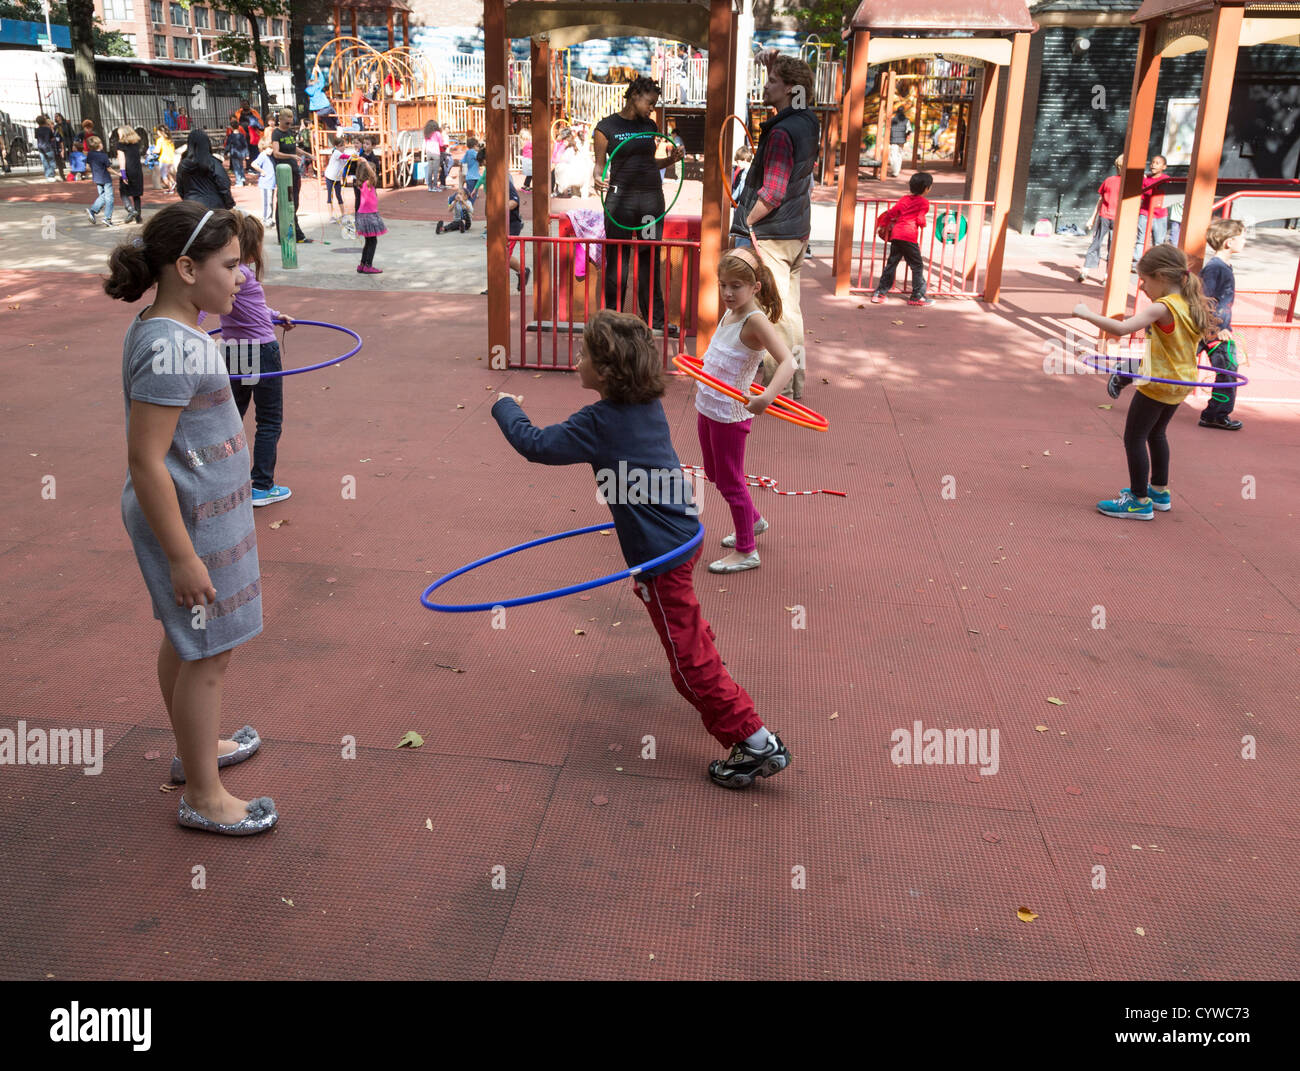 Los niños con hula hoop, Tecumseh Playground, oeste de la calle 78 y la Avenida Amsterdam, Manhattan, Ciudad de Nueva York, EE.UU. Foto de stock